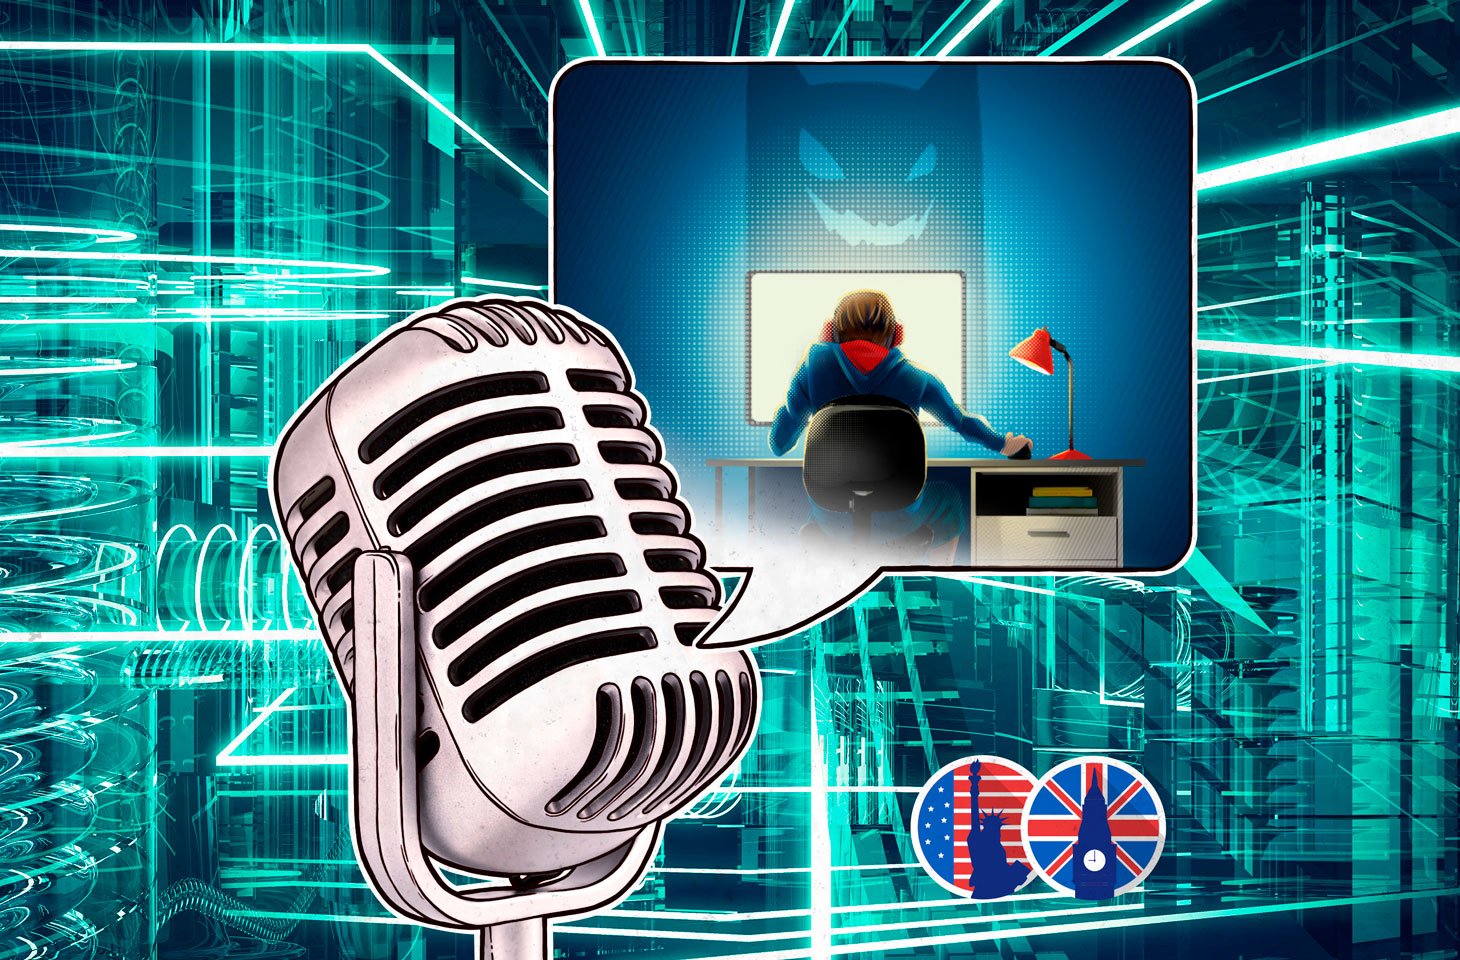 Kaspersky podcast: Tips for keeping kids safe online